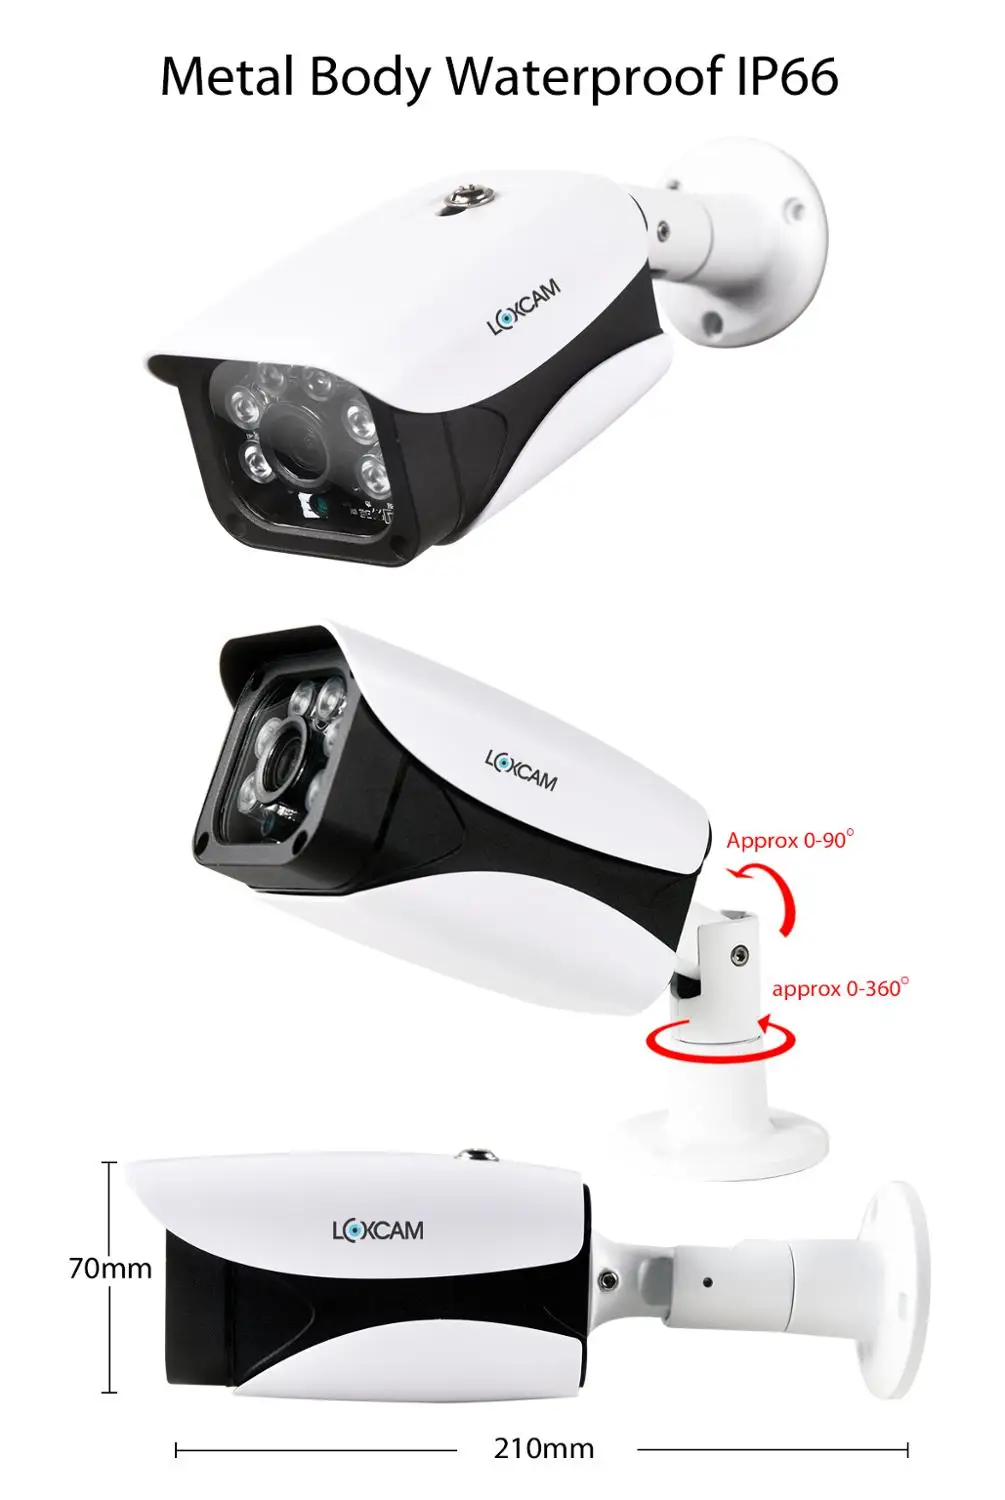 LOXCAM H. 265+ 5MP Ultra HD 16CH 5MP Varnostne kamere Sistem IP66 Prostem Nepremočljiva Nočno gledanje Video nadzorna Kamera kit 4T